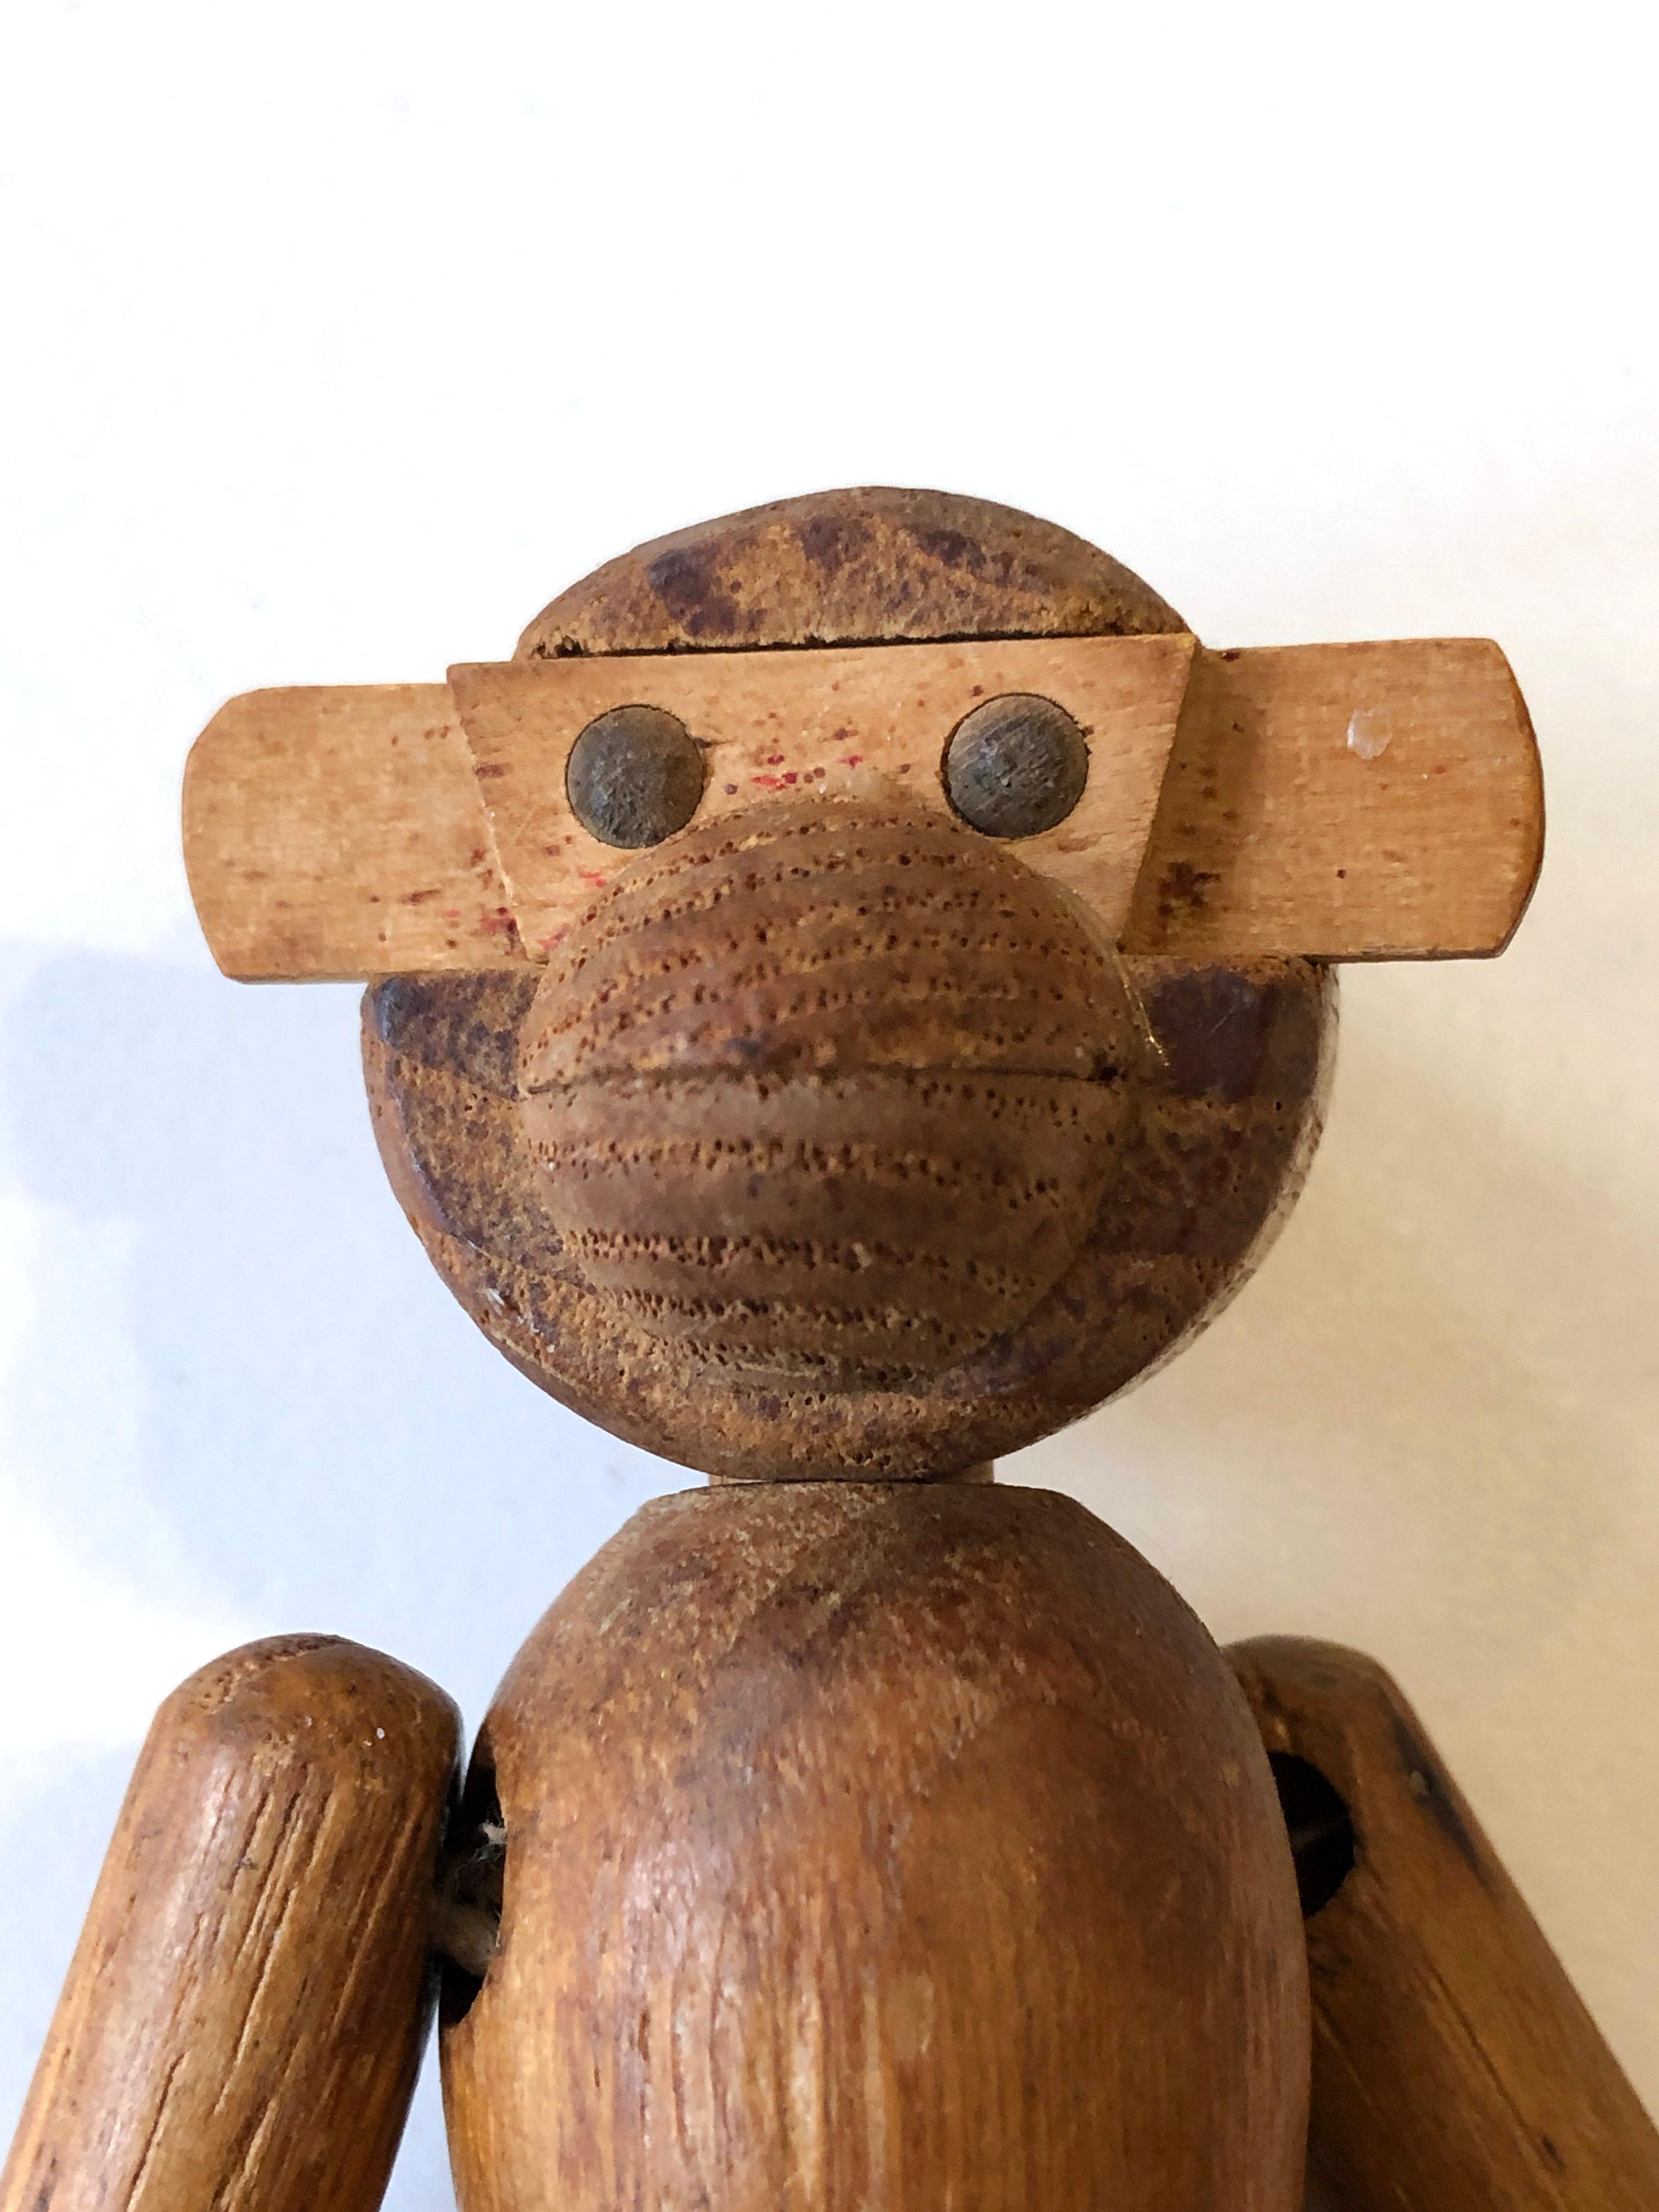 Kleiner hölzerner Affe aus den 1950er Jahren von Kay Bojesen.
In schönem Originalzustand - schöne Patina auf dem Holz - ein Stück der linken Hand des Affen fehlt. 
Siehe Bilder. Sie können sie leicht wiederherstellen.